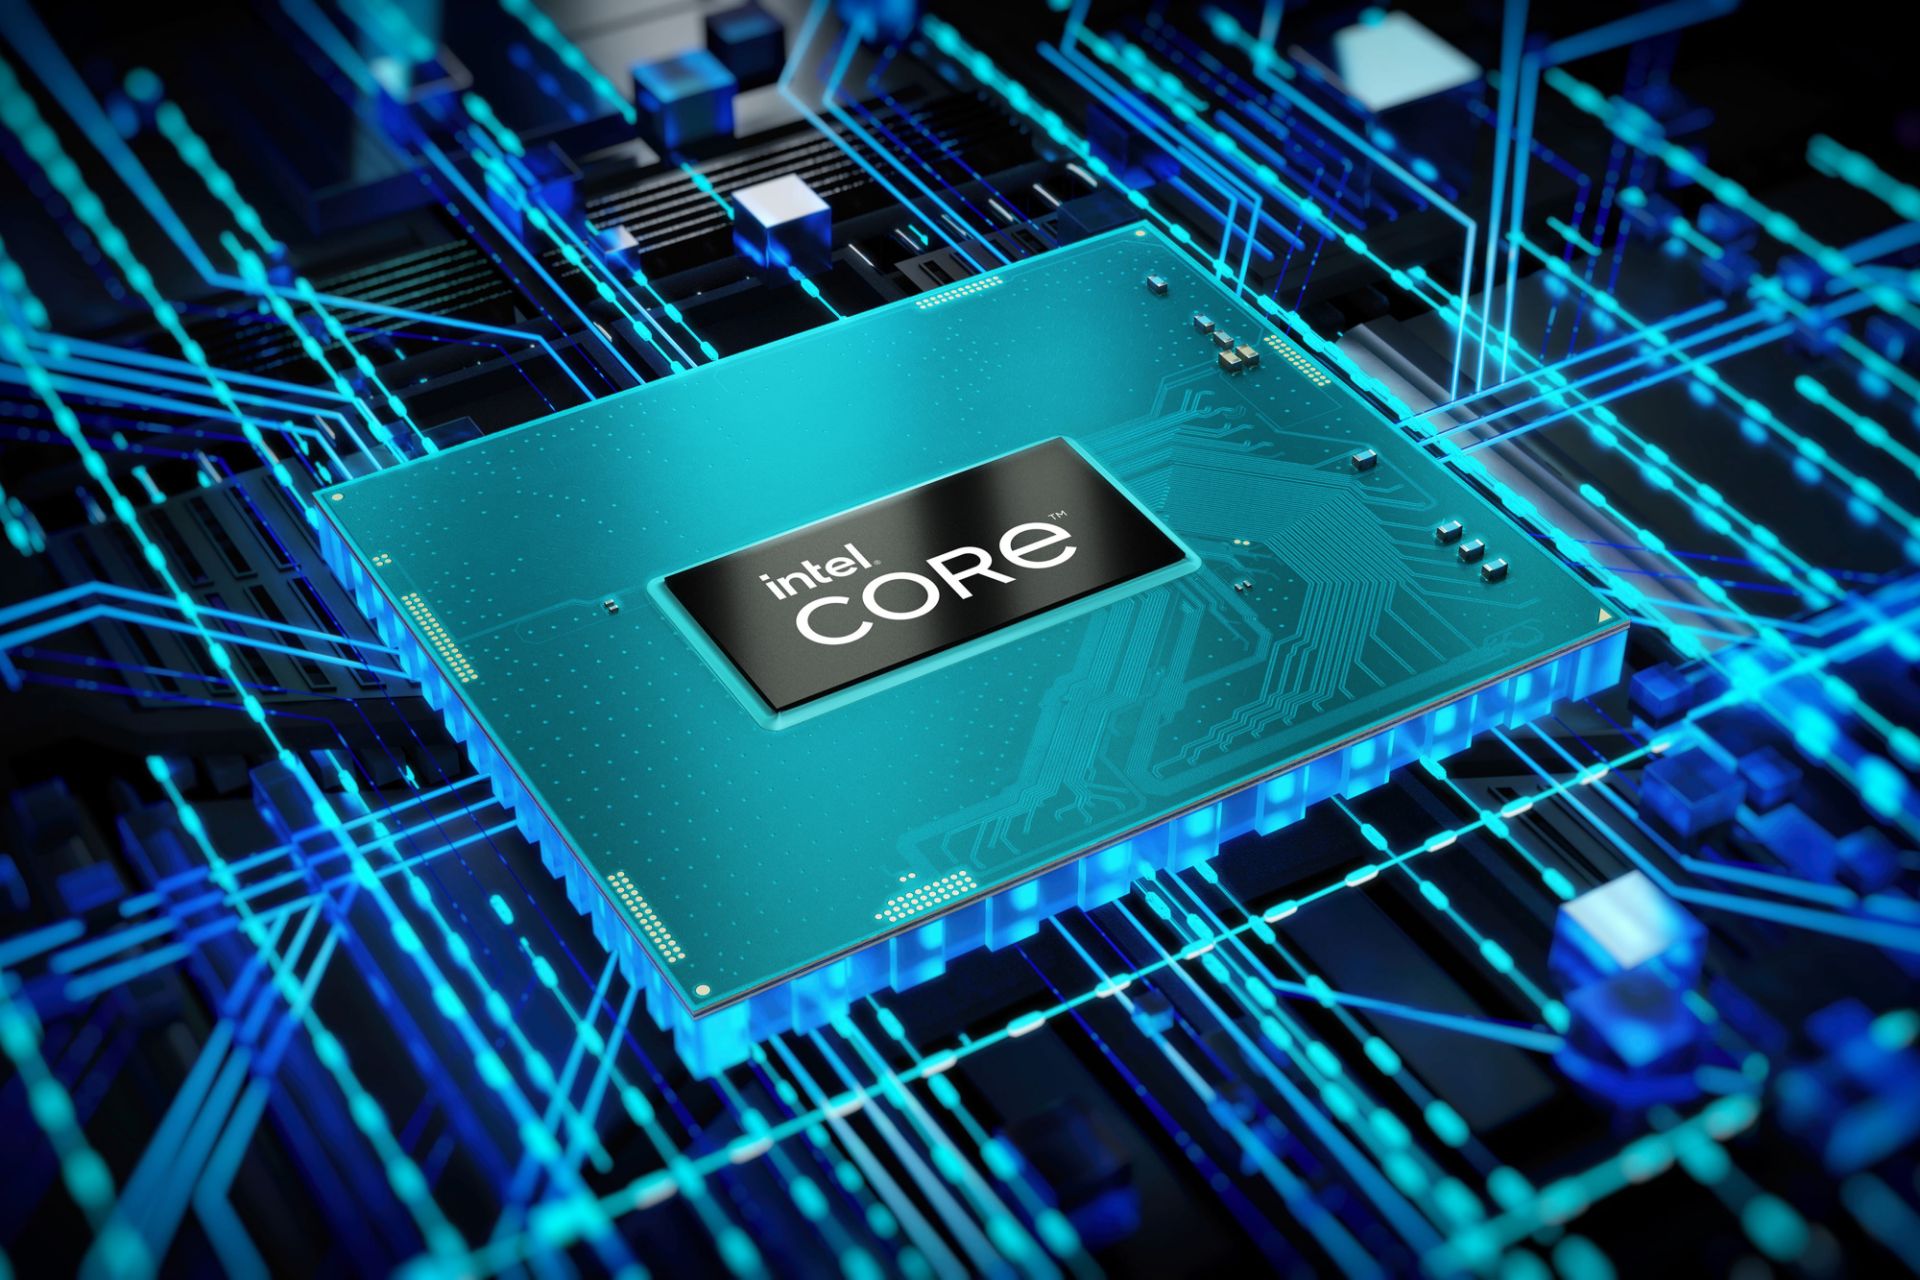 پردازنده اینتل کور / Intel Core روی مادربرد طرح گرافیکی آبی نسل دوازدهم HX